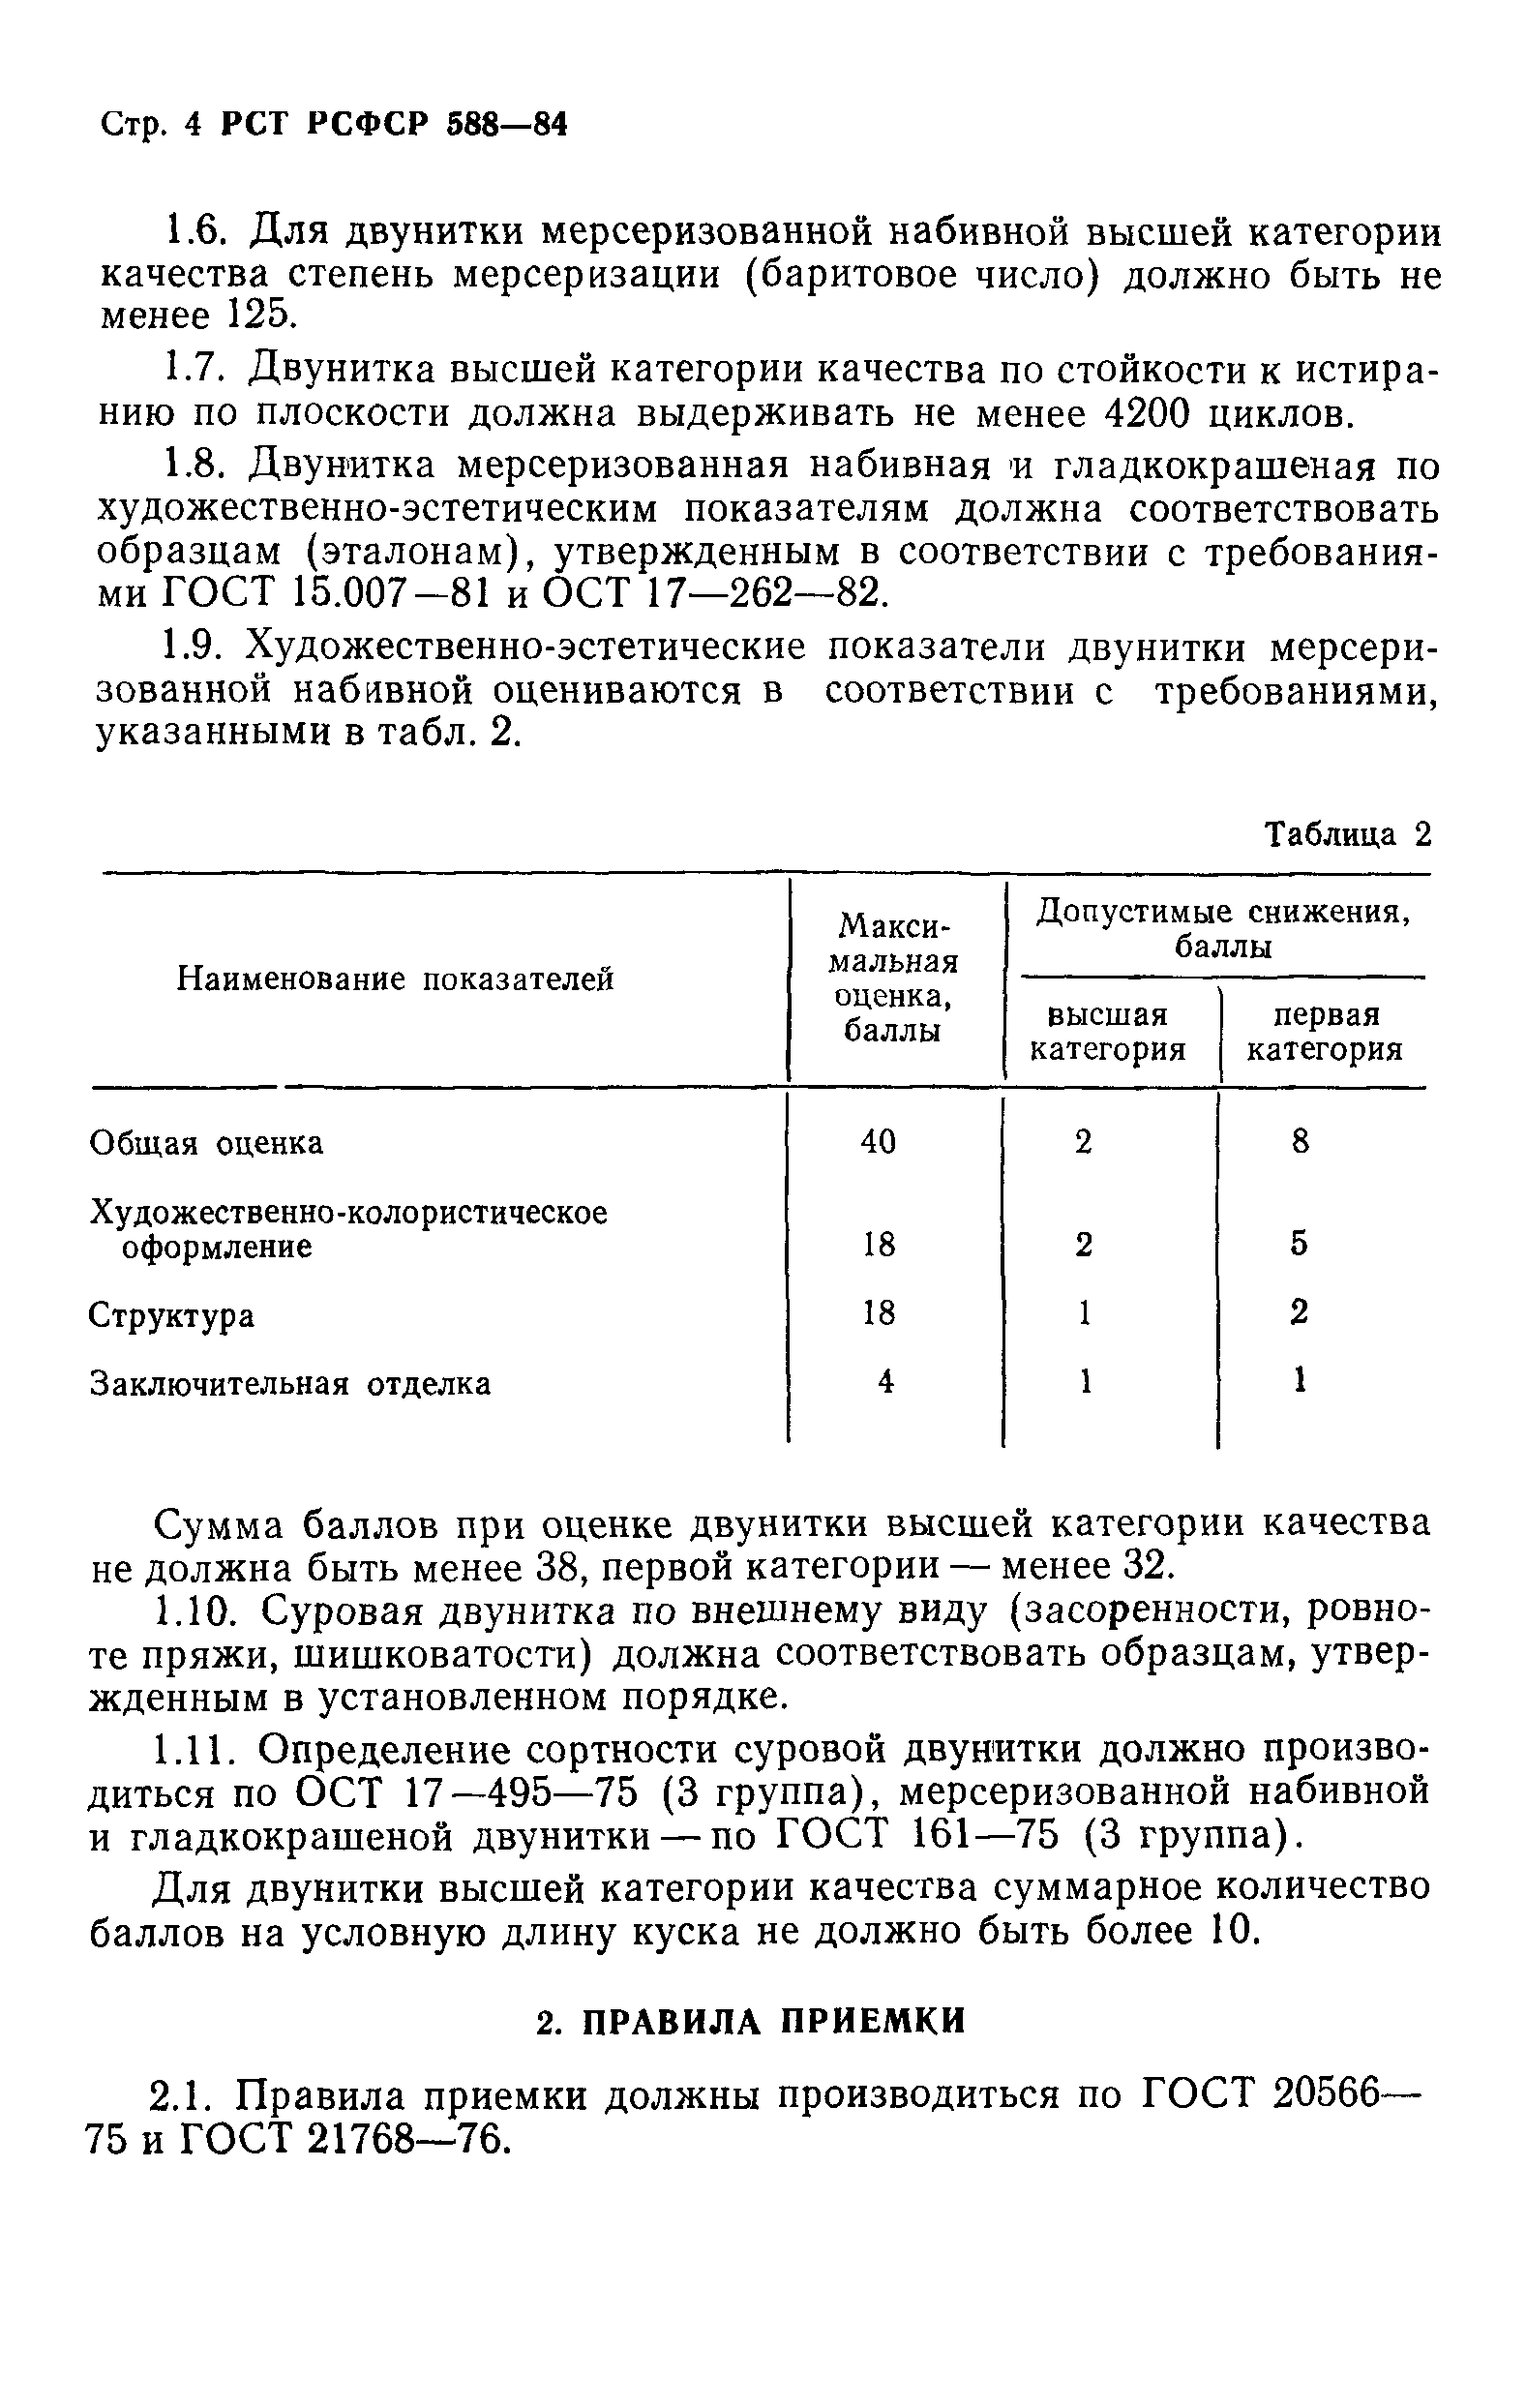 РСТ РСФСР 588-84